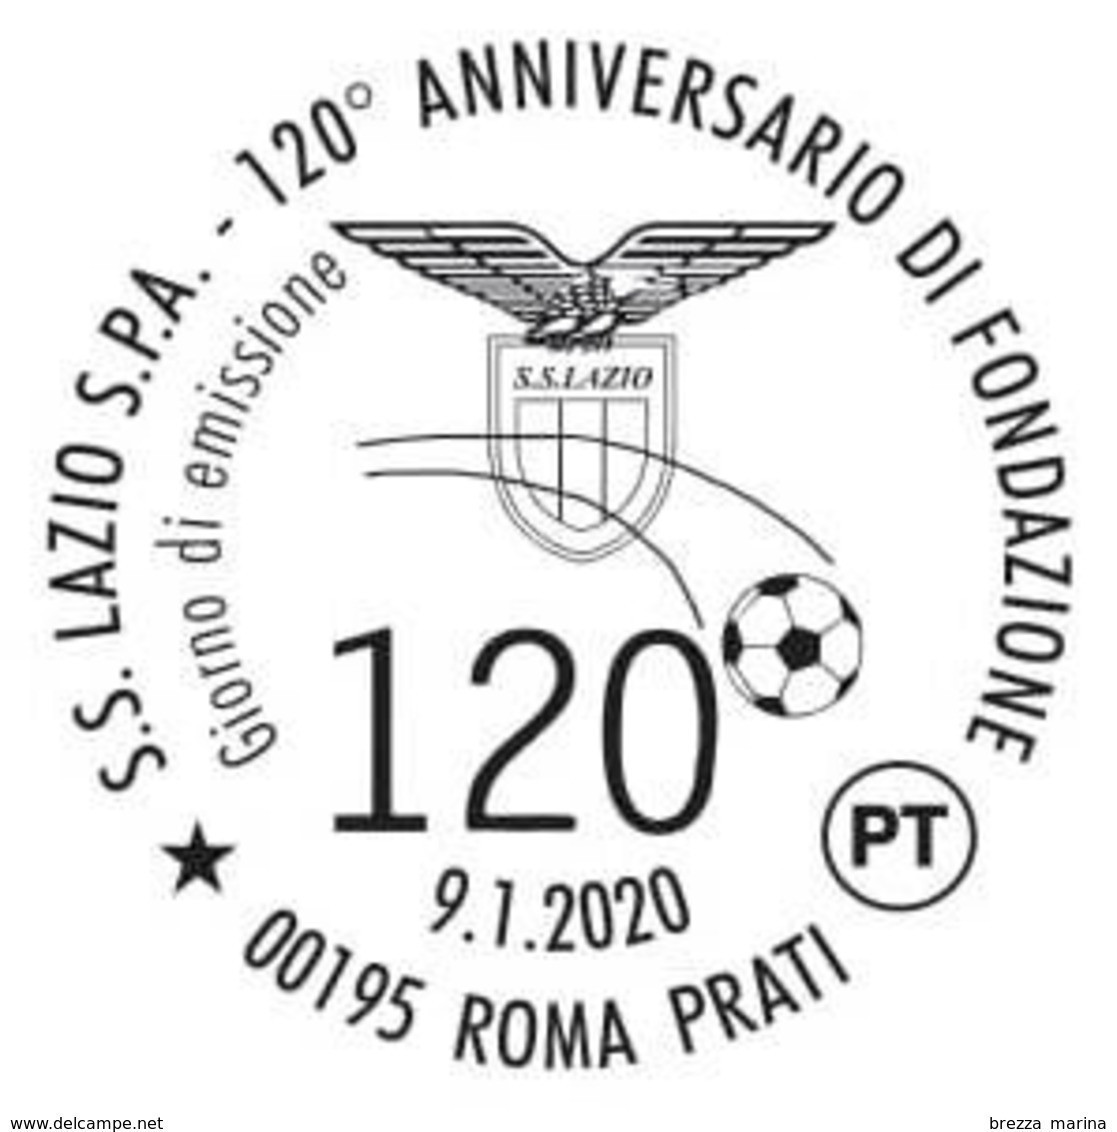 Nuovo - MNH - ITALIA - 2020 - 120 Anni Della S.S. Lazio S.p.A. – Calcio – Pallone - B - 2011-20: Neufs